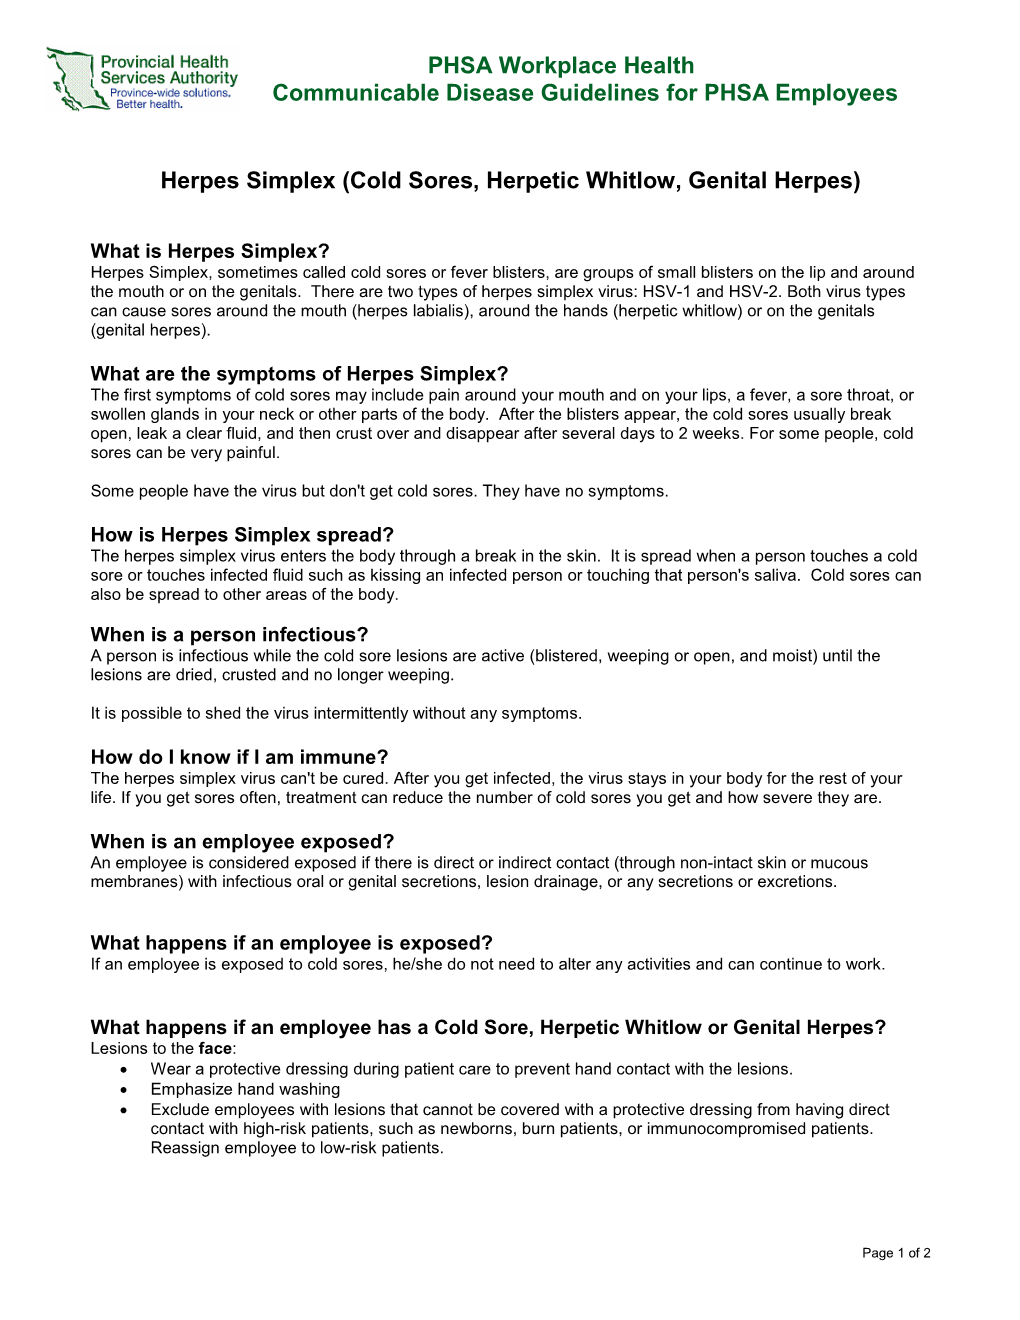 Herpes Simplex (Cold Sores, Herpetic Whitlow, Genital Herpes)